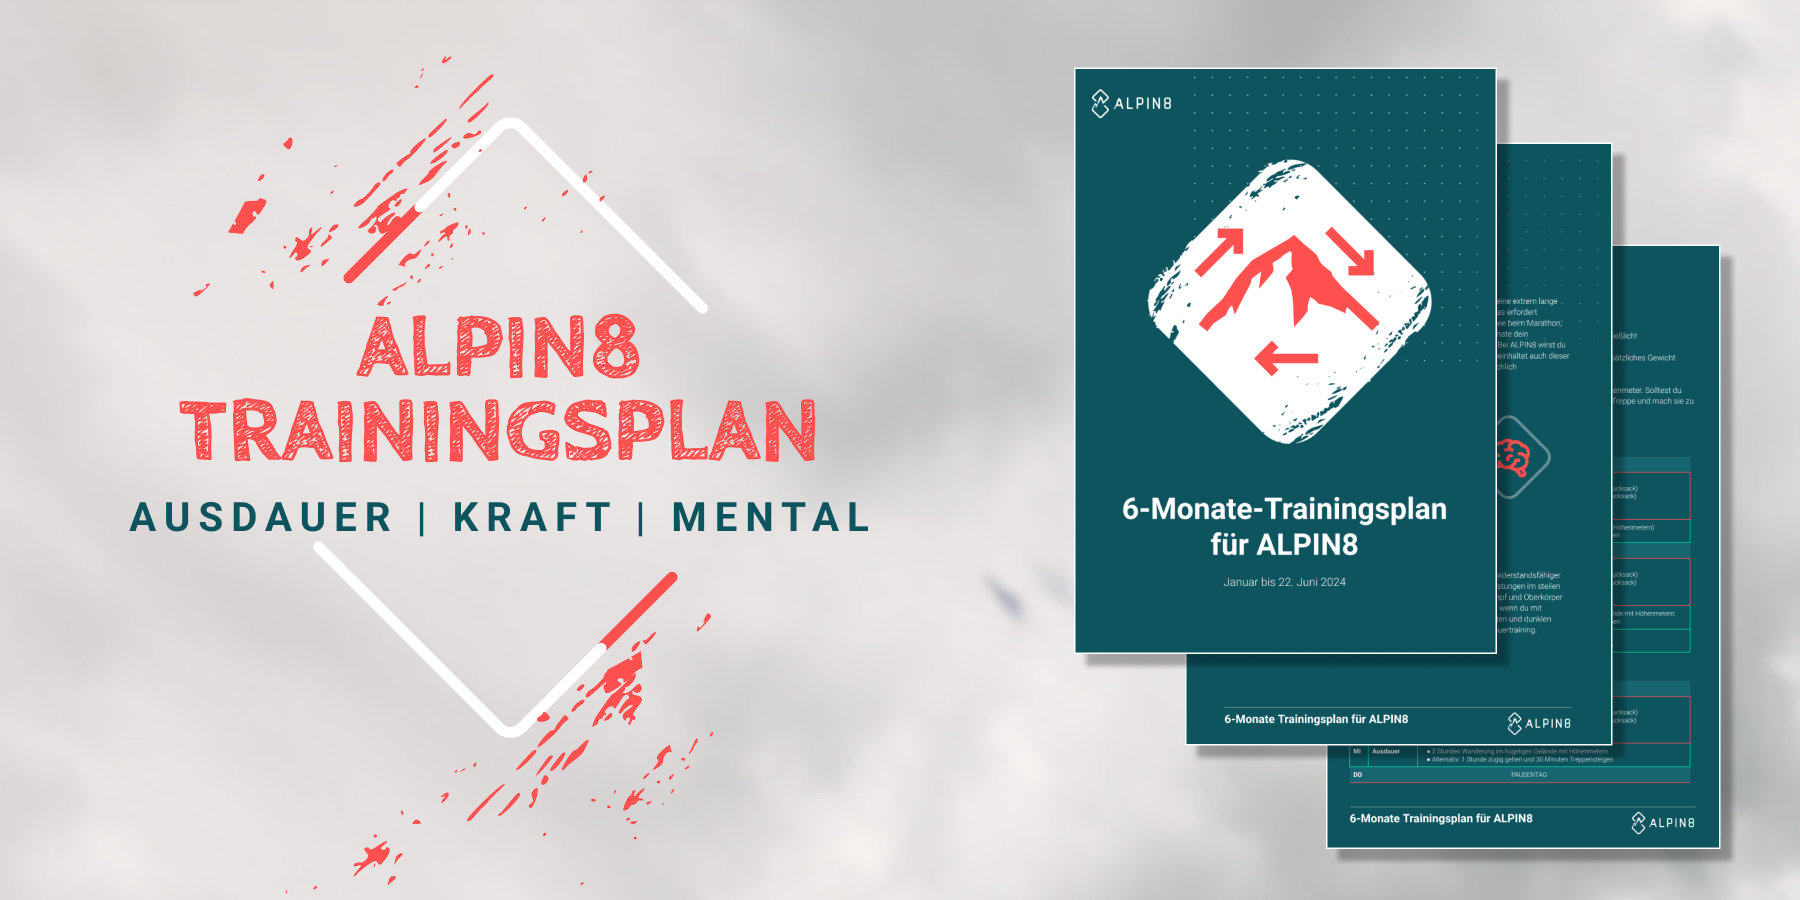 ALPIN8 Trainingsplan